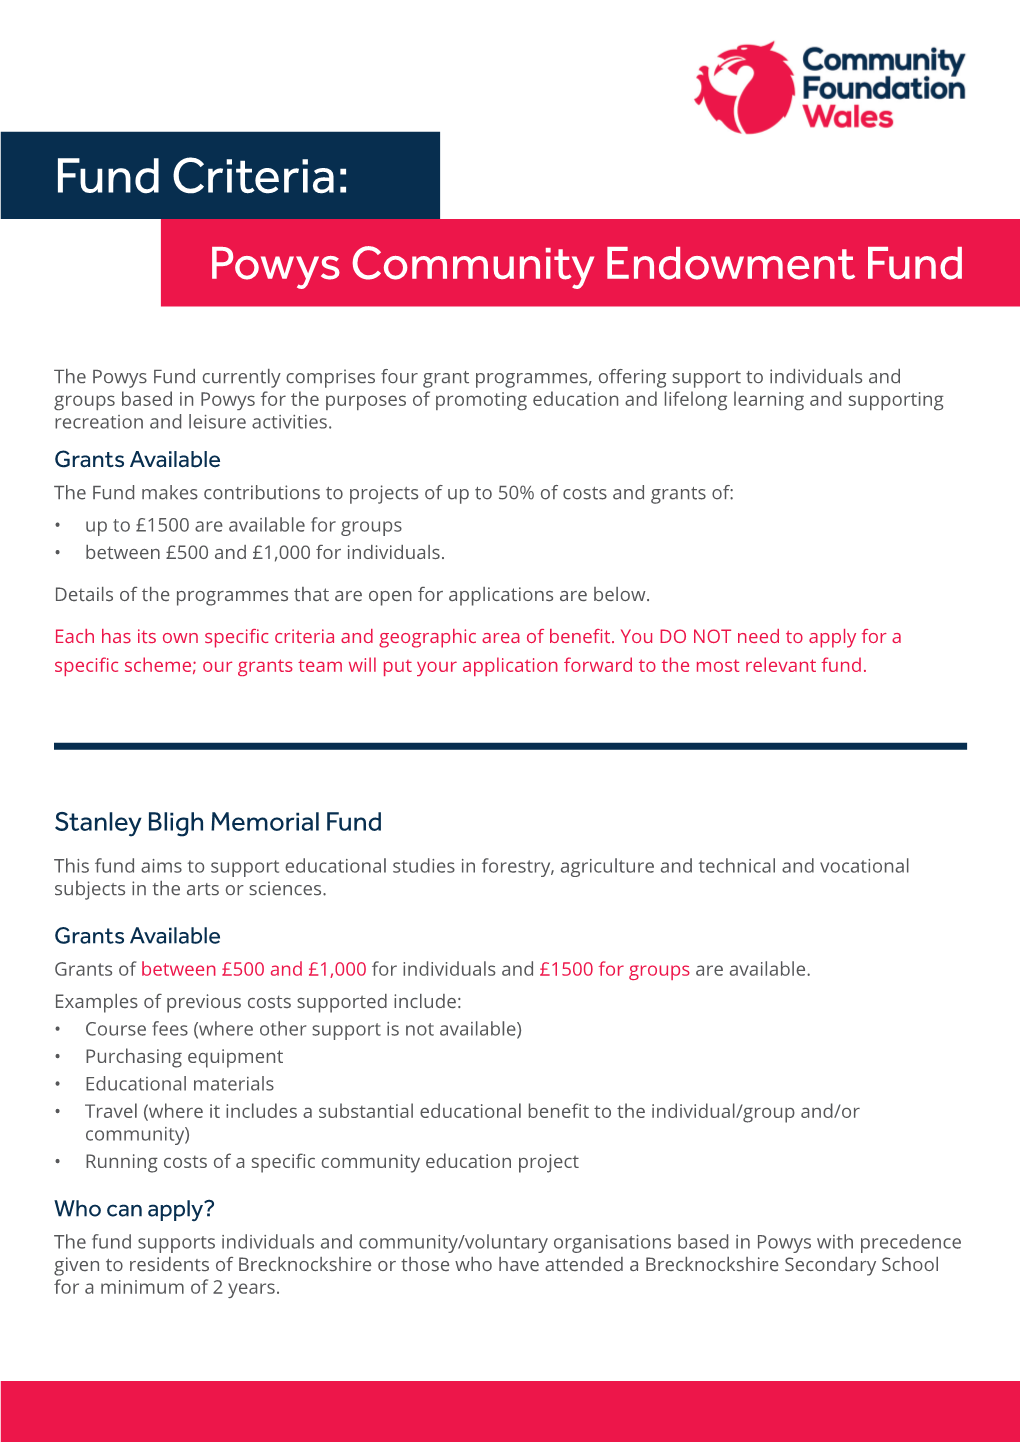 Fund Criteria: Powys Community Endowment Fund